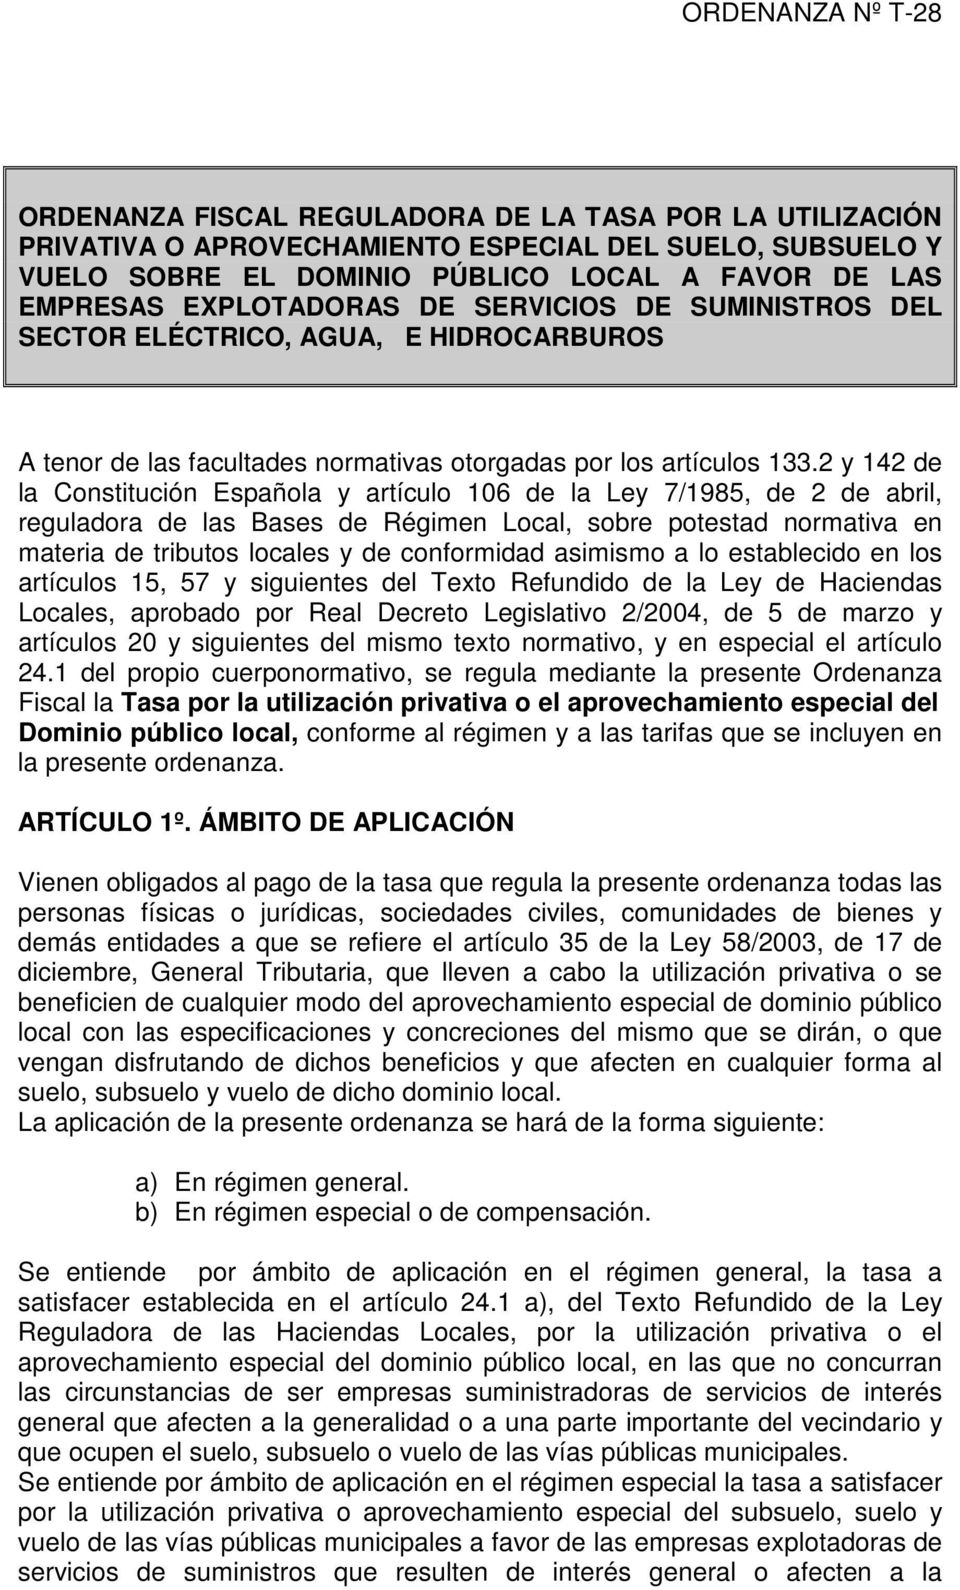 2 y 142 de la Constitución Española y artículo 106 de la Ley 7/1985, de 2 de abril, reguladora de las Bases de Régimen Local, sobre potestad normativa en materia de tributos locales y de conformidad